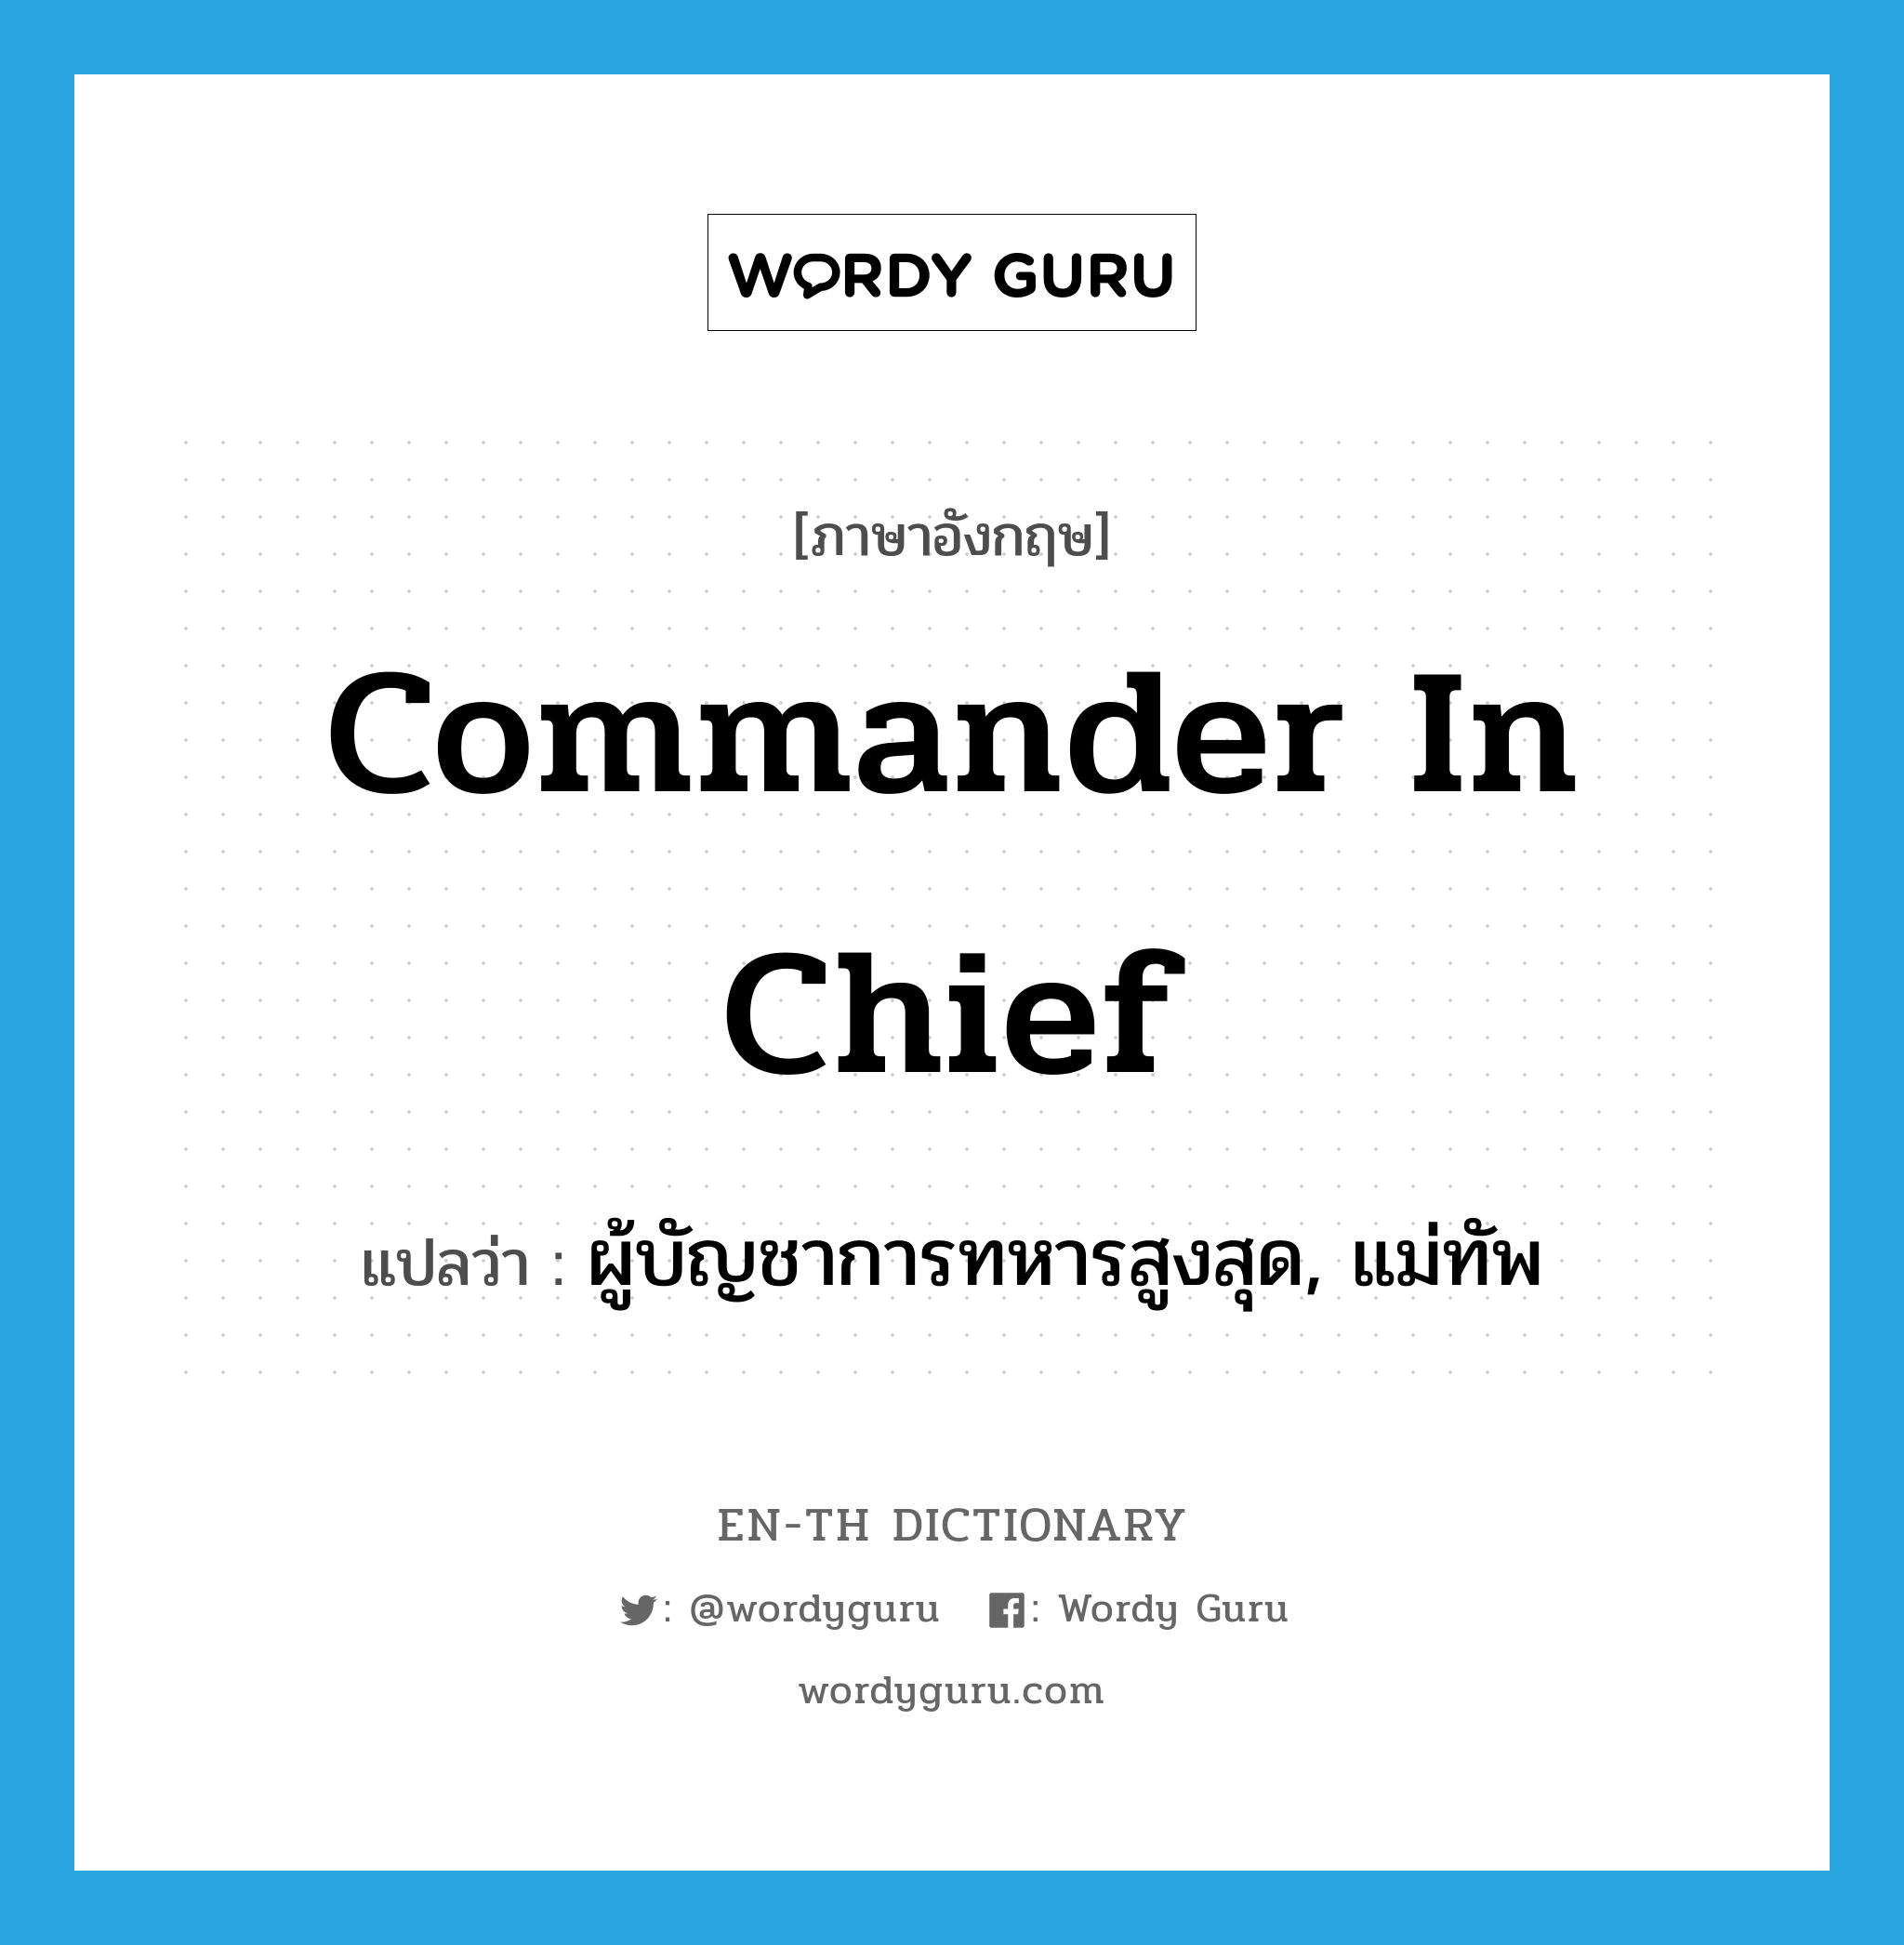 ผู้บัญชาการทหารสูงสุด, แม่ทัพ ภาษาอังกฤษ?, คำศัพท์ภาษาอังกฤษ ผู้บัญชาการทหารสูงสุด, แม่ทัพ แปลว่า commander in chief ประเภท N หมวด N